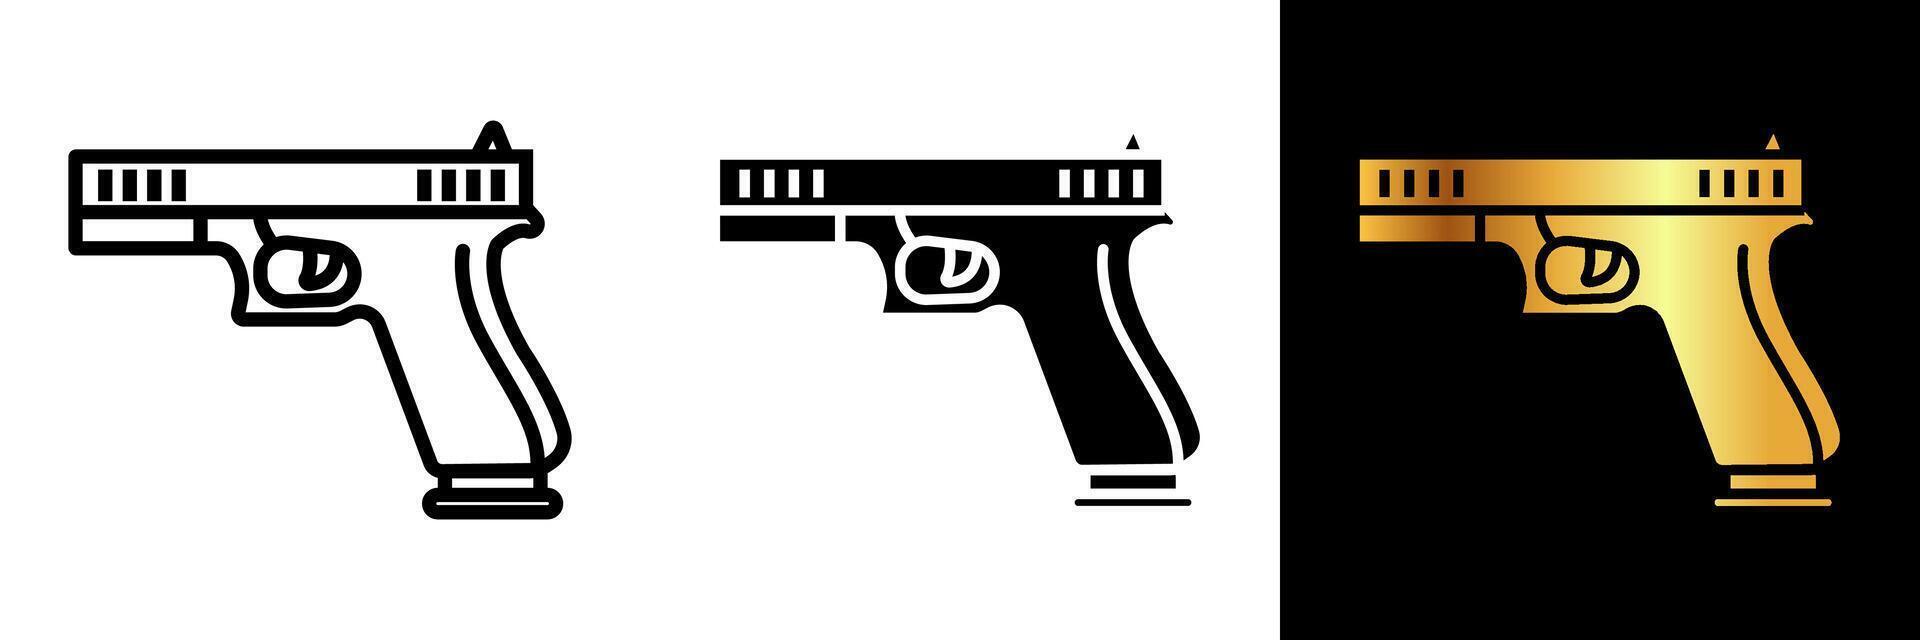 de pistol ikon betecknar eldkraft, säkerhet, och lag tillämpning. den förkroppsligar teman av skydd, auktoritet, och fara. vektor